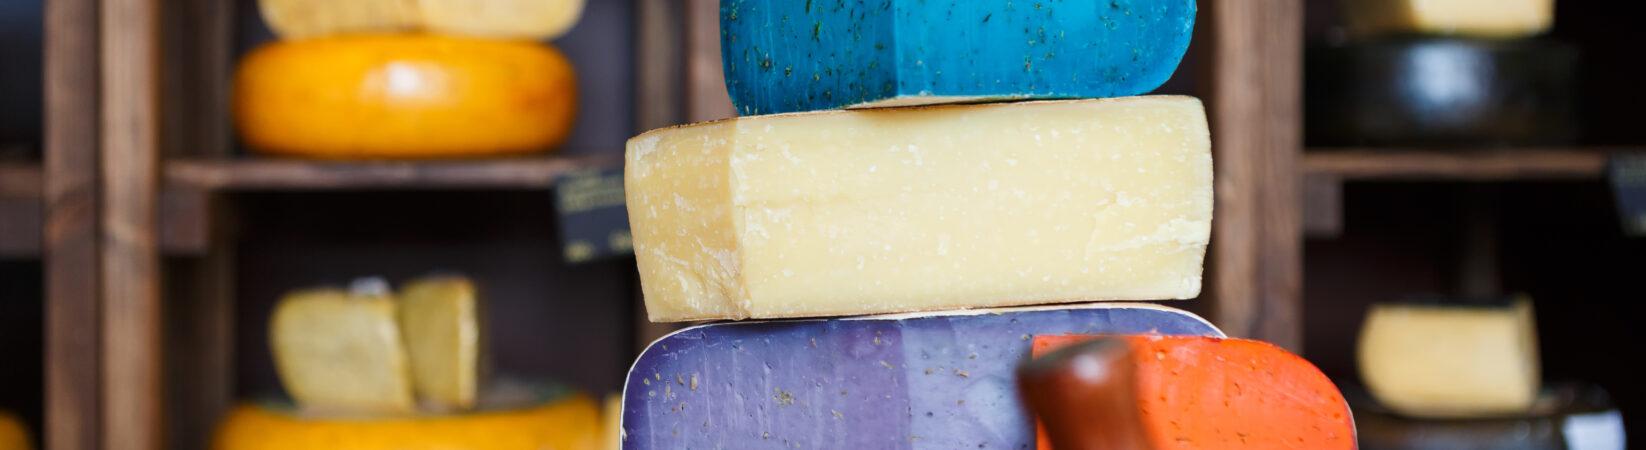 Käse – Ein idealer Schlank- und Sattmacher?